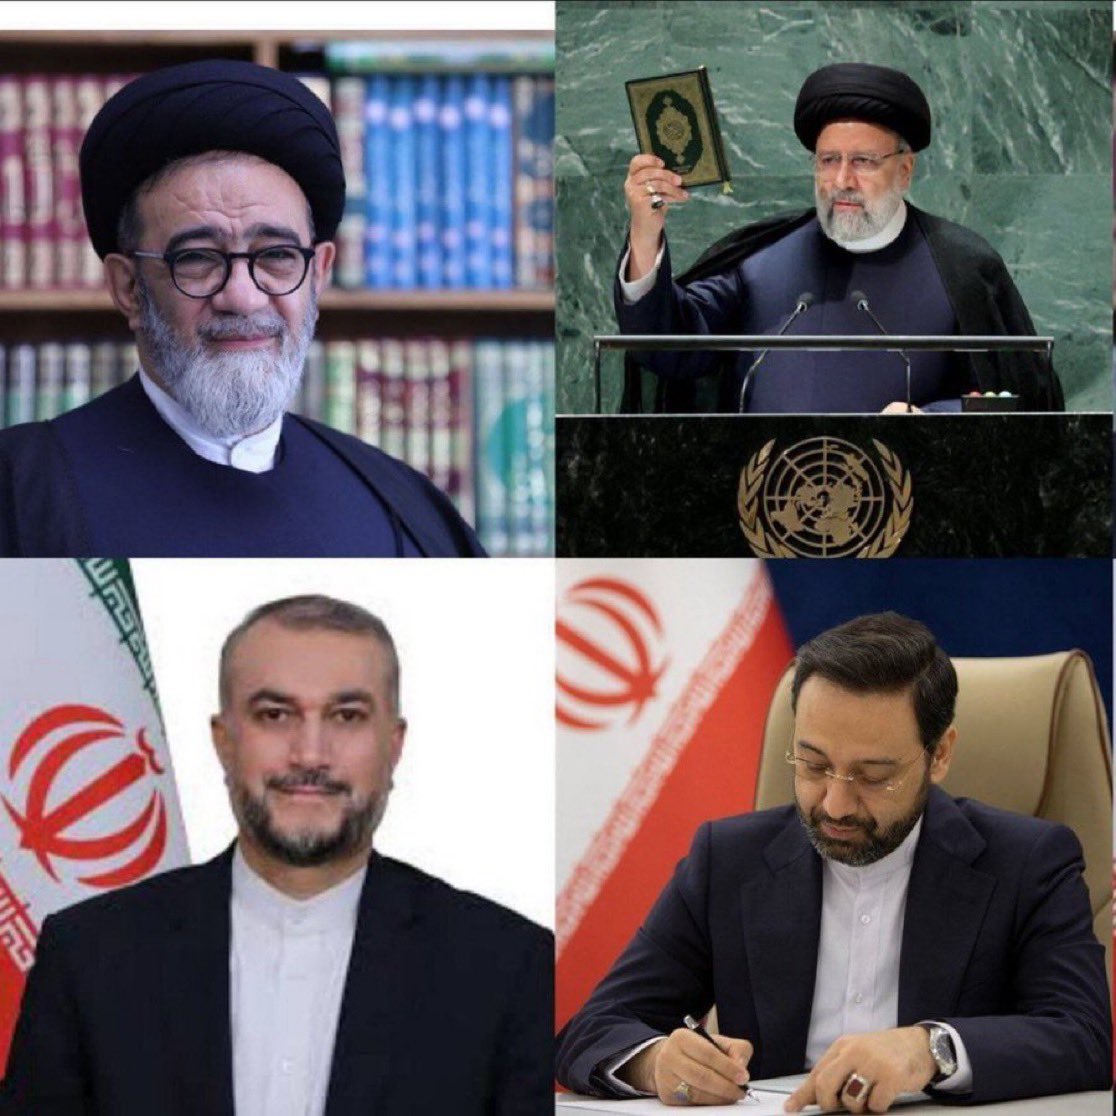 Breaking: Iran president confirmed dead